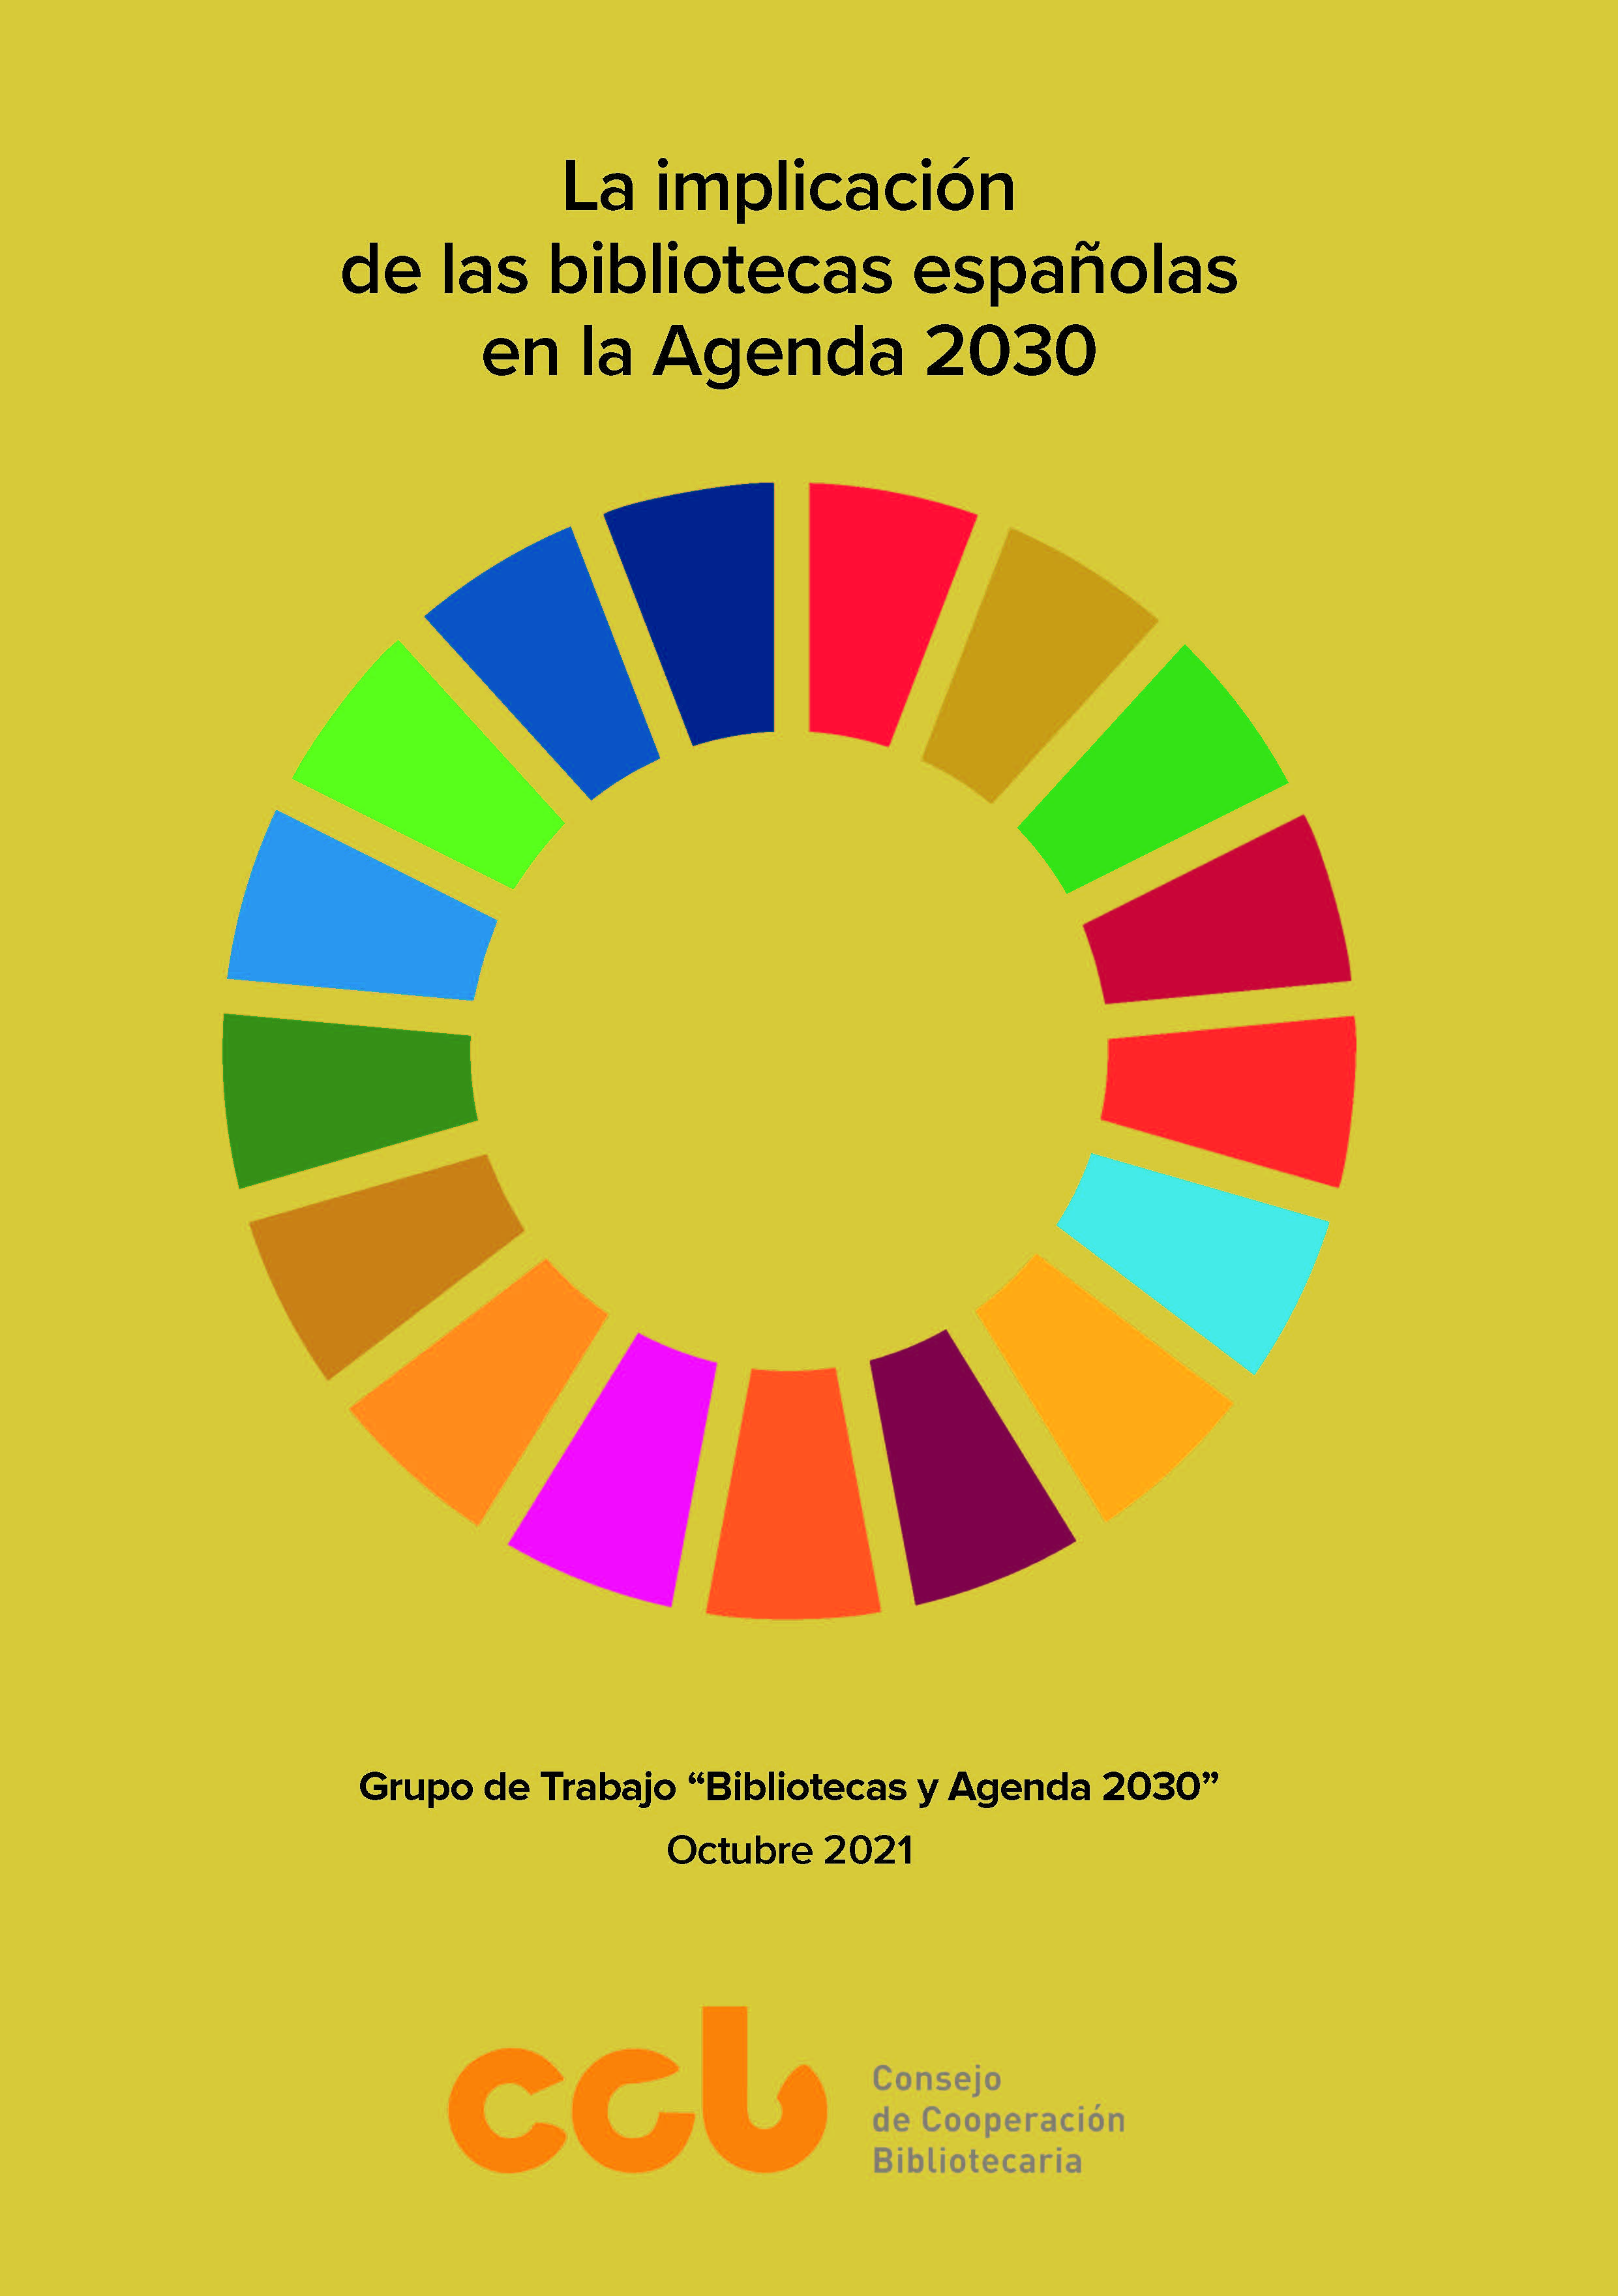 Portada del documento "La implicación de las bibliotecas españolas en la Agenda 2030" con el logotipo de los Objetivos de Desarrollo Sostenible.